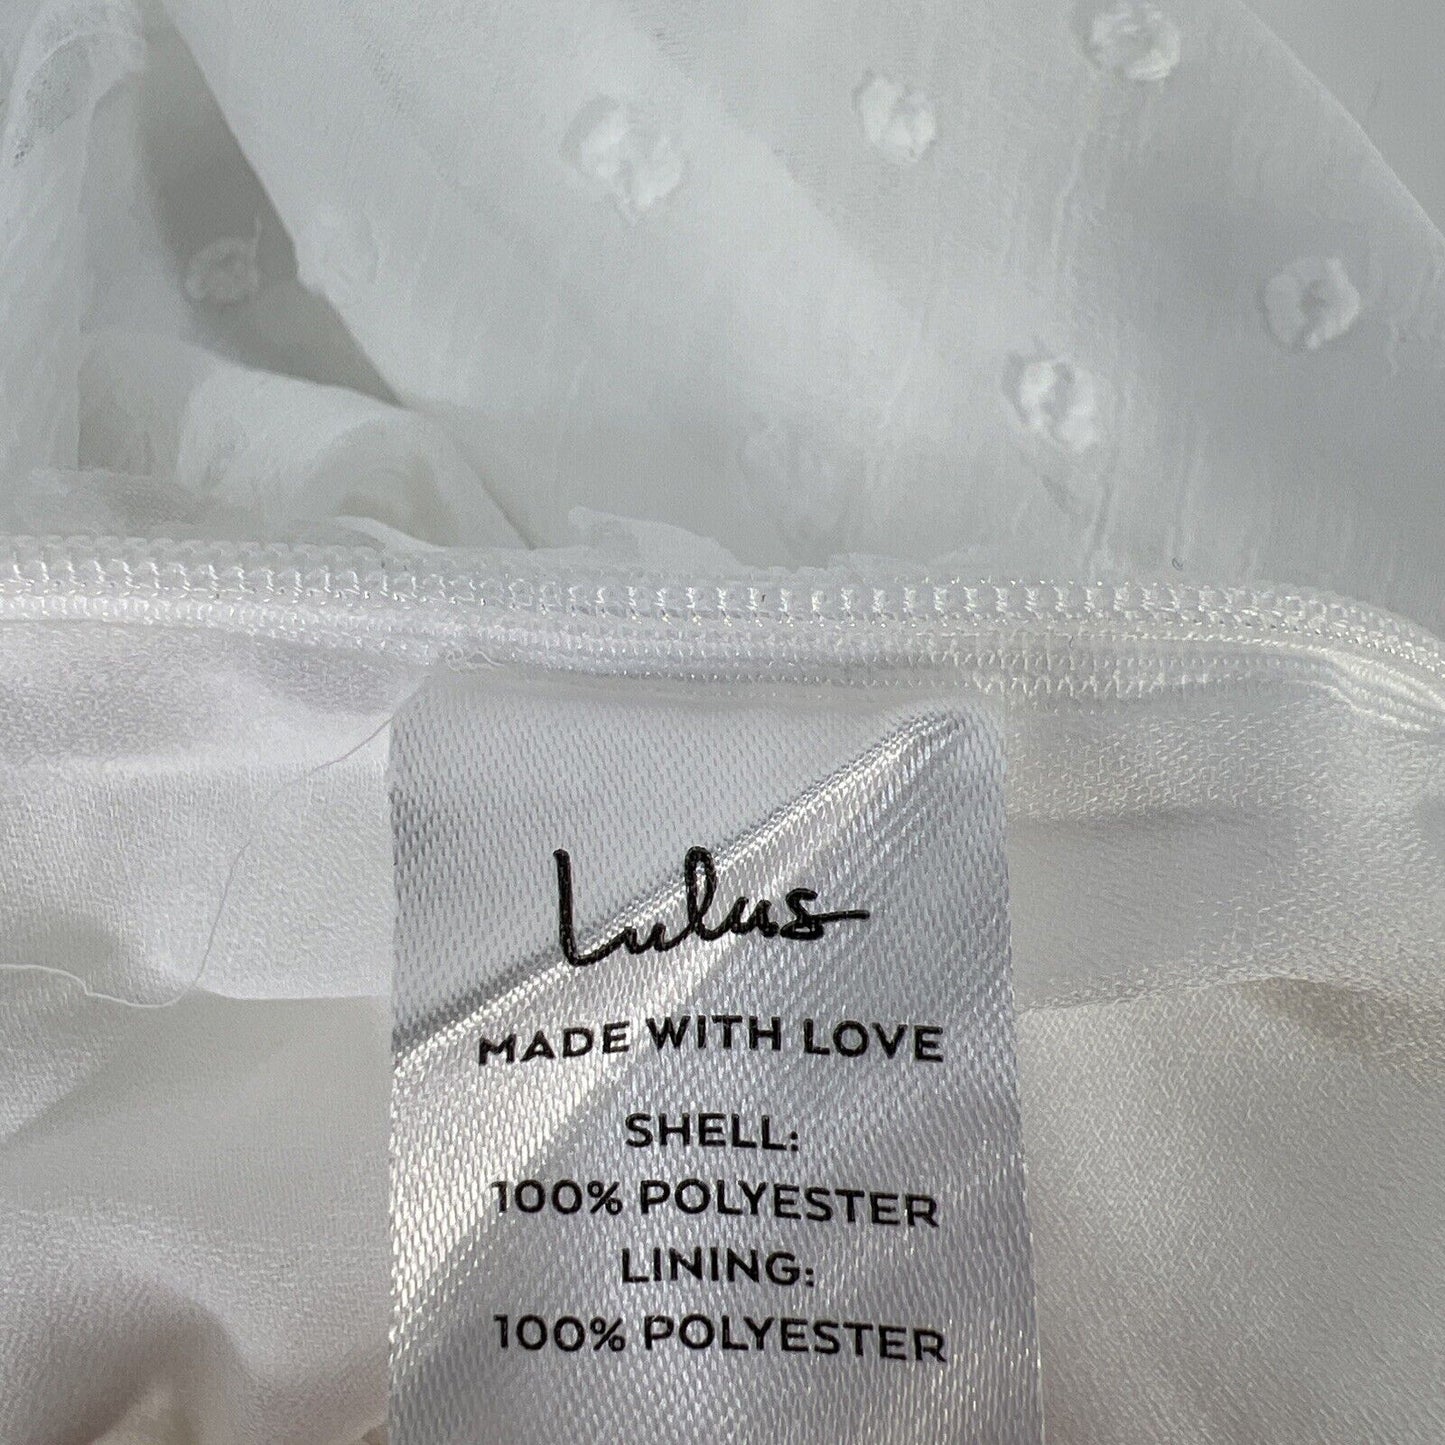 NEW Lulu's Women's White V-Neck Semi Sheer Long Sleeve Blouse - M